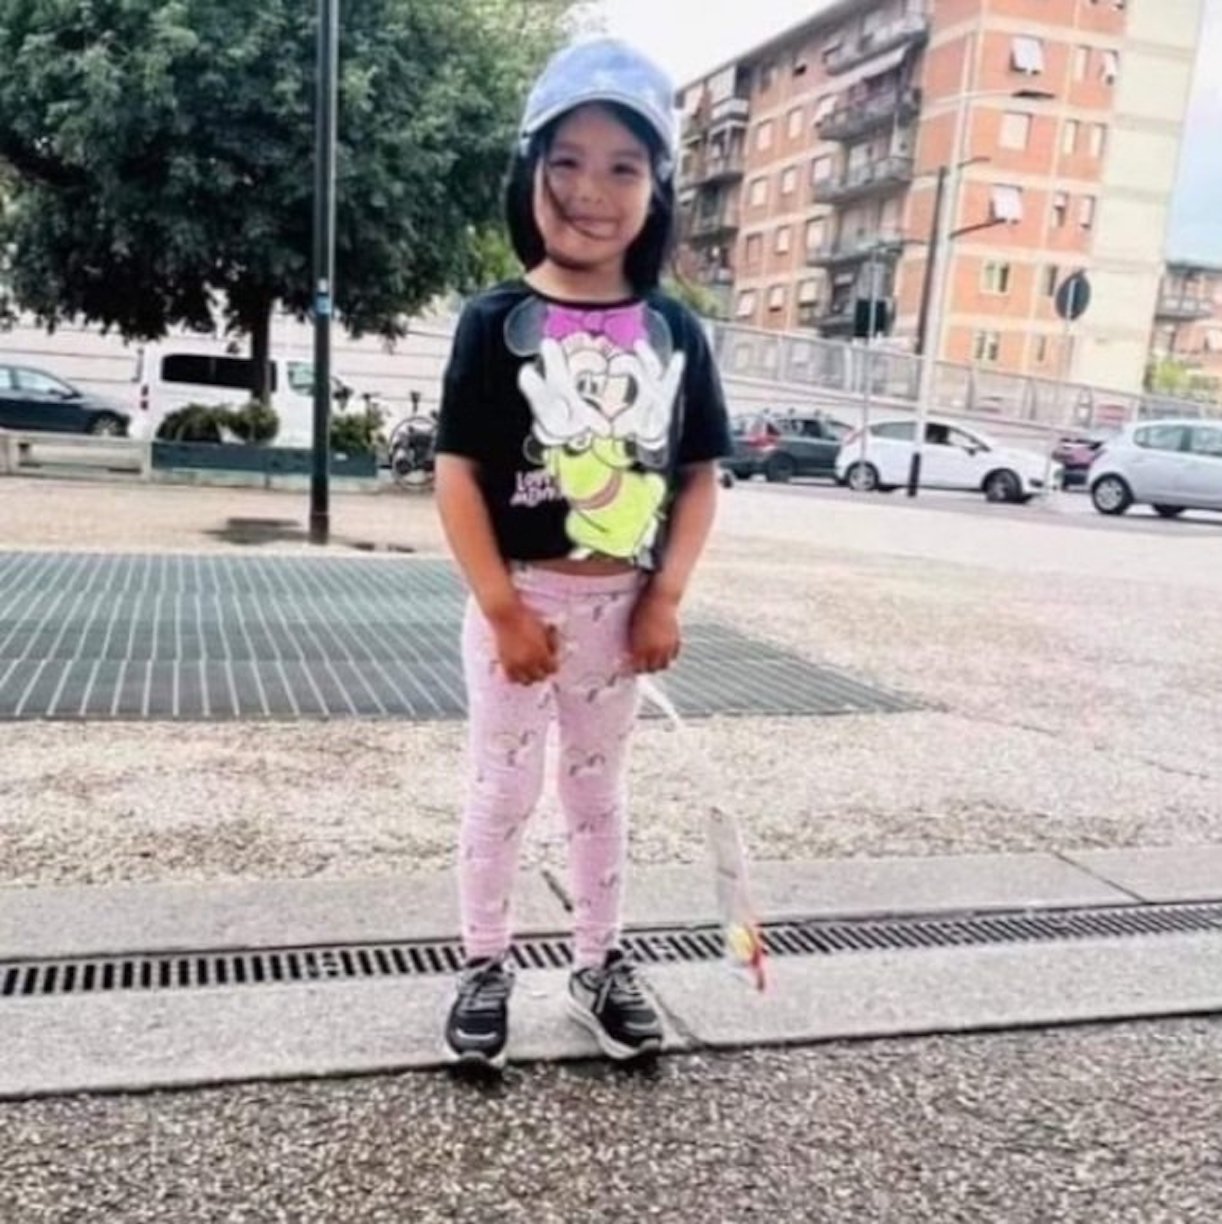 Scomparsa Kata la bimba avvistata su un autobus a Bologna